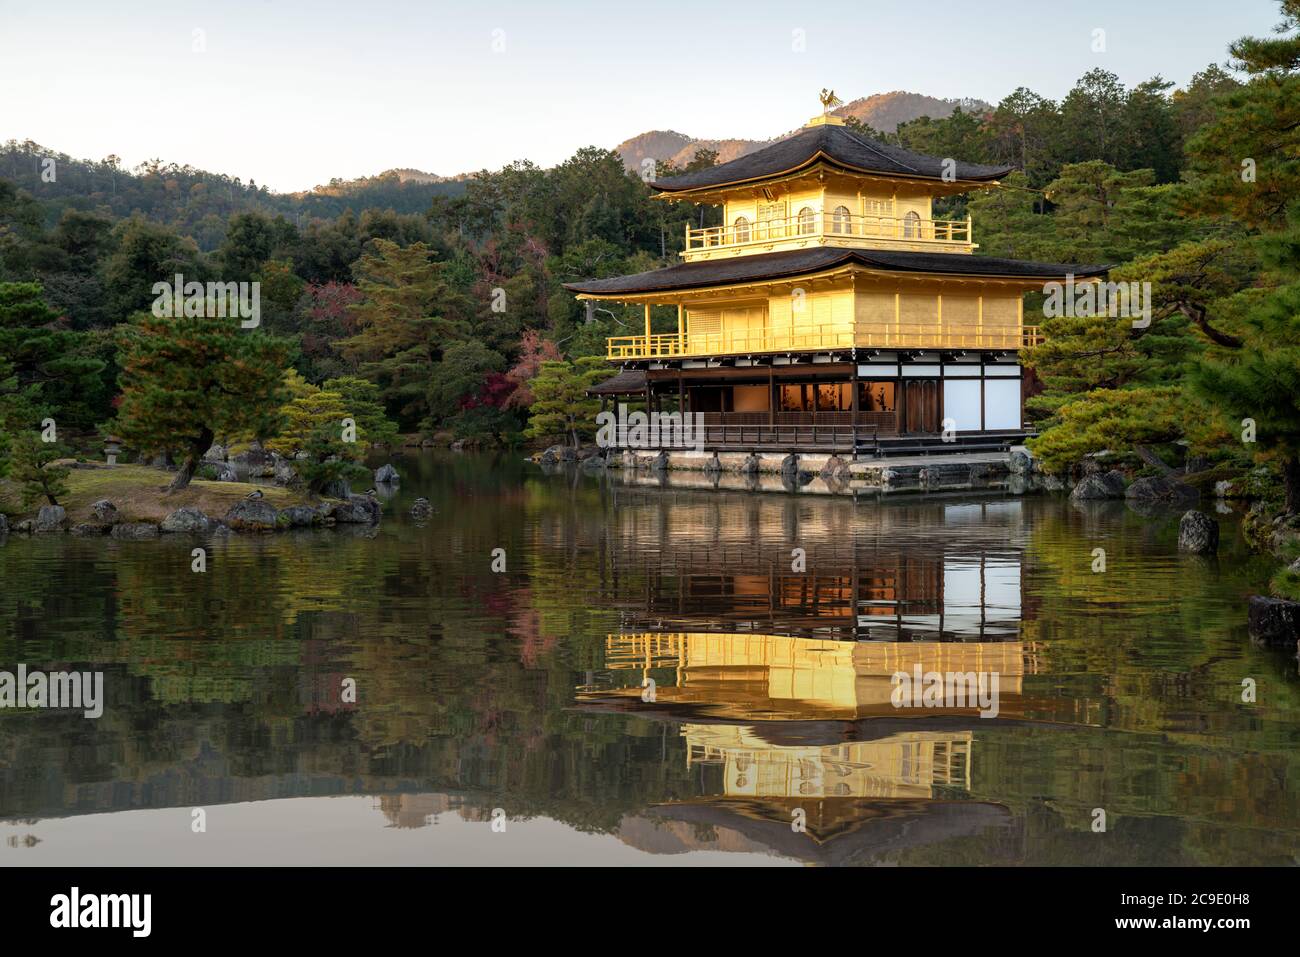 Blick auf Kinkakuji der berühmte Goldene Pavillon mit japanischem Garten und Teich mit dramatischem Abendhimmel in der Herbstsaison in Kyoto, Japan. Japanische Landschaft Stockfoto